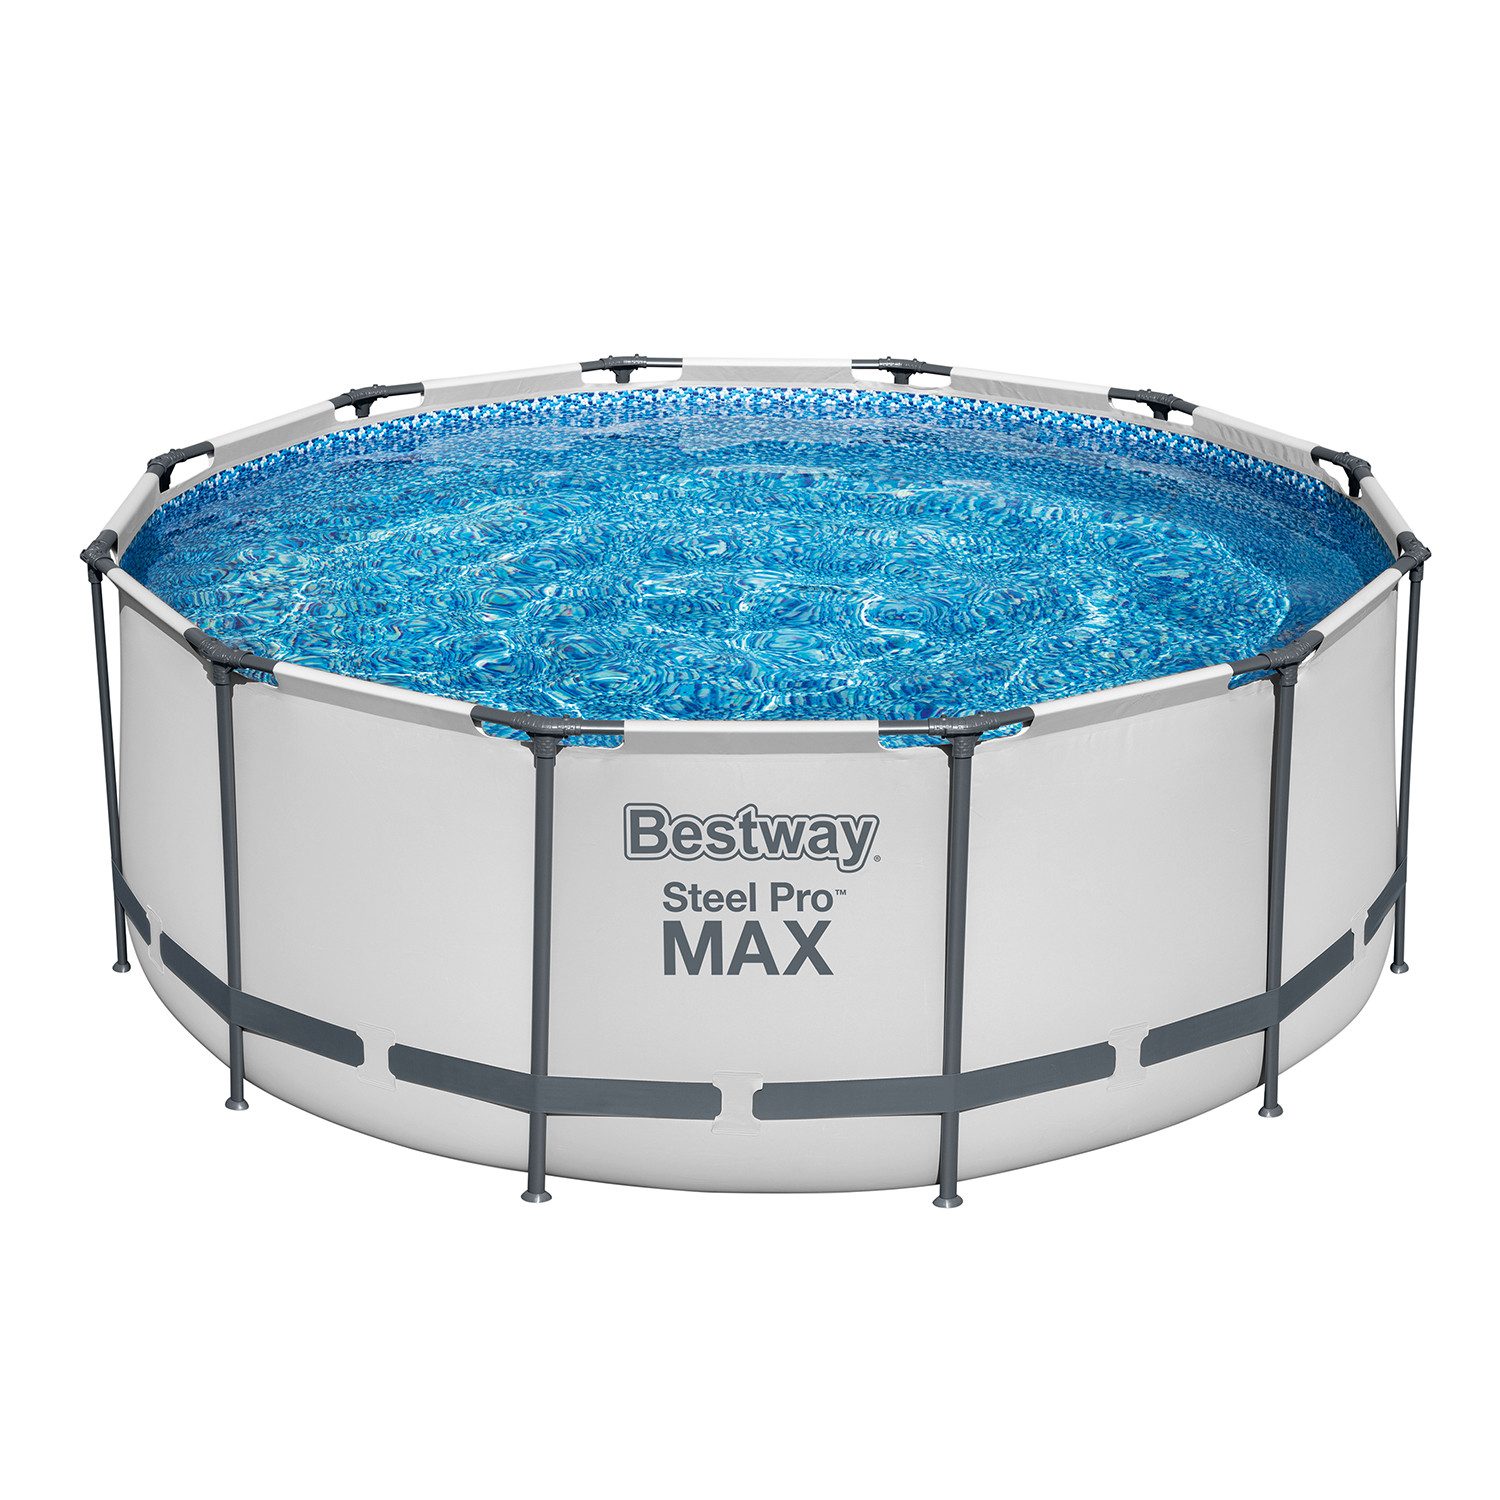 Bestway Framepool Steel Pro MAX™ Solo Pool ohne Zubehör Ø 366 x 122 cm, lichtgrau, rund